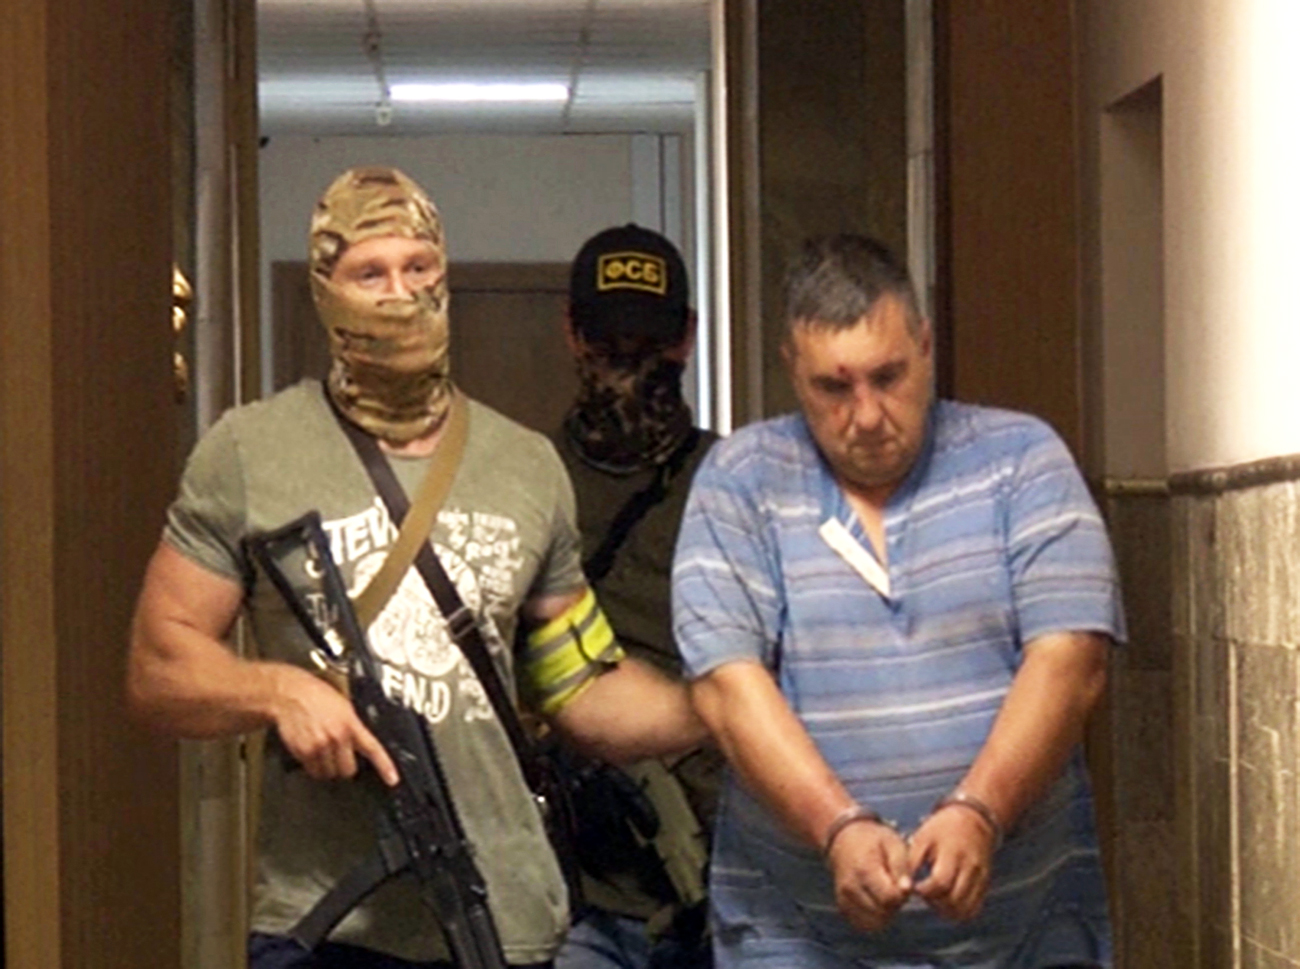 Nach Angaben des Geheimdienstes wurden ukrainische als auch russische Staatsangehörige, die als Agenten des ukrainischen Verteidigungsministeriums an der versuchten Sabotage beteiligt gewesen sein sollen, festgenommen. Sie legten derzeit Geständnisse ab.